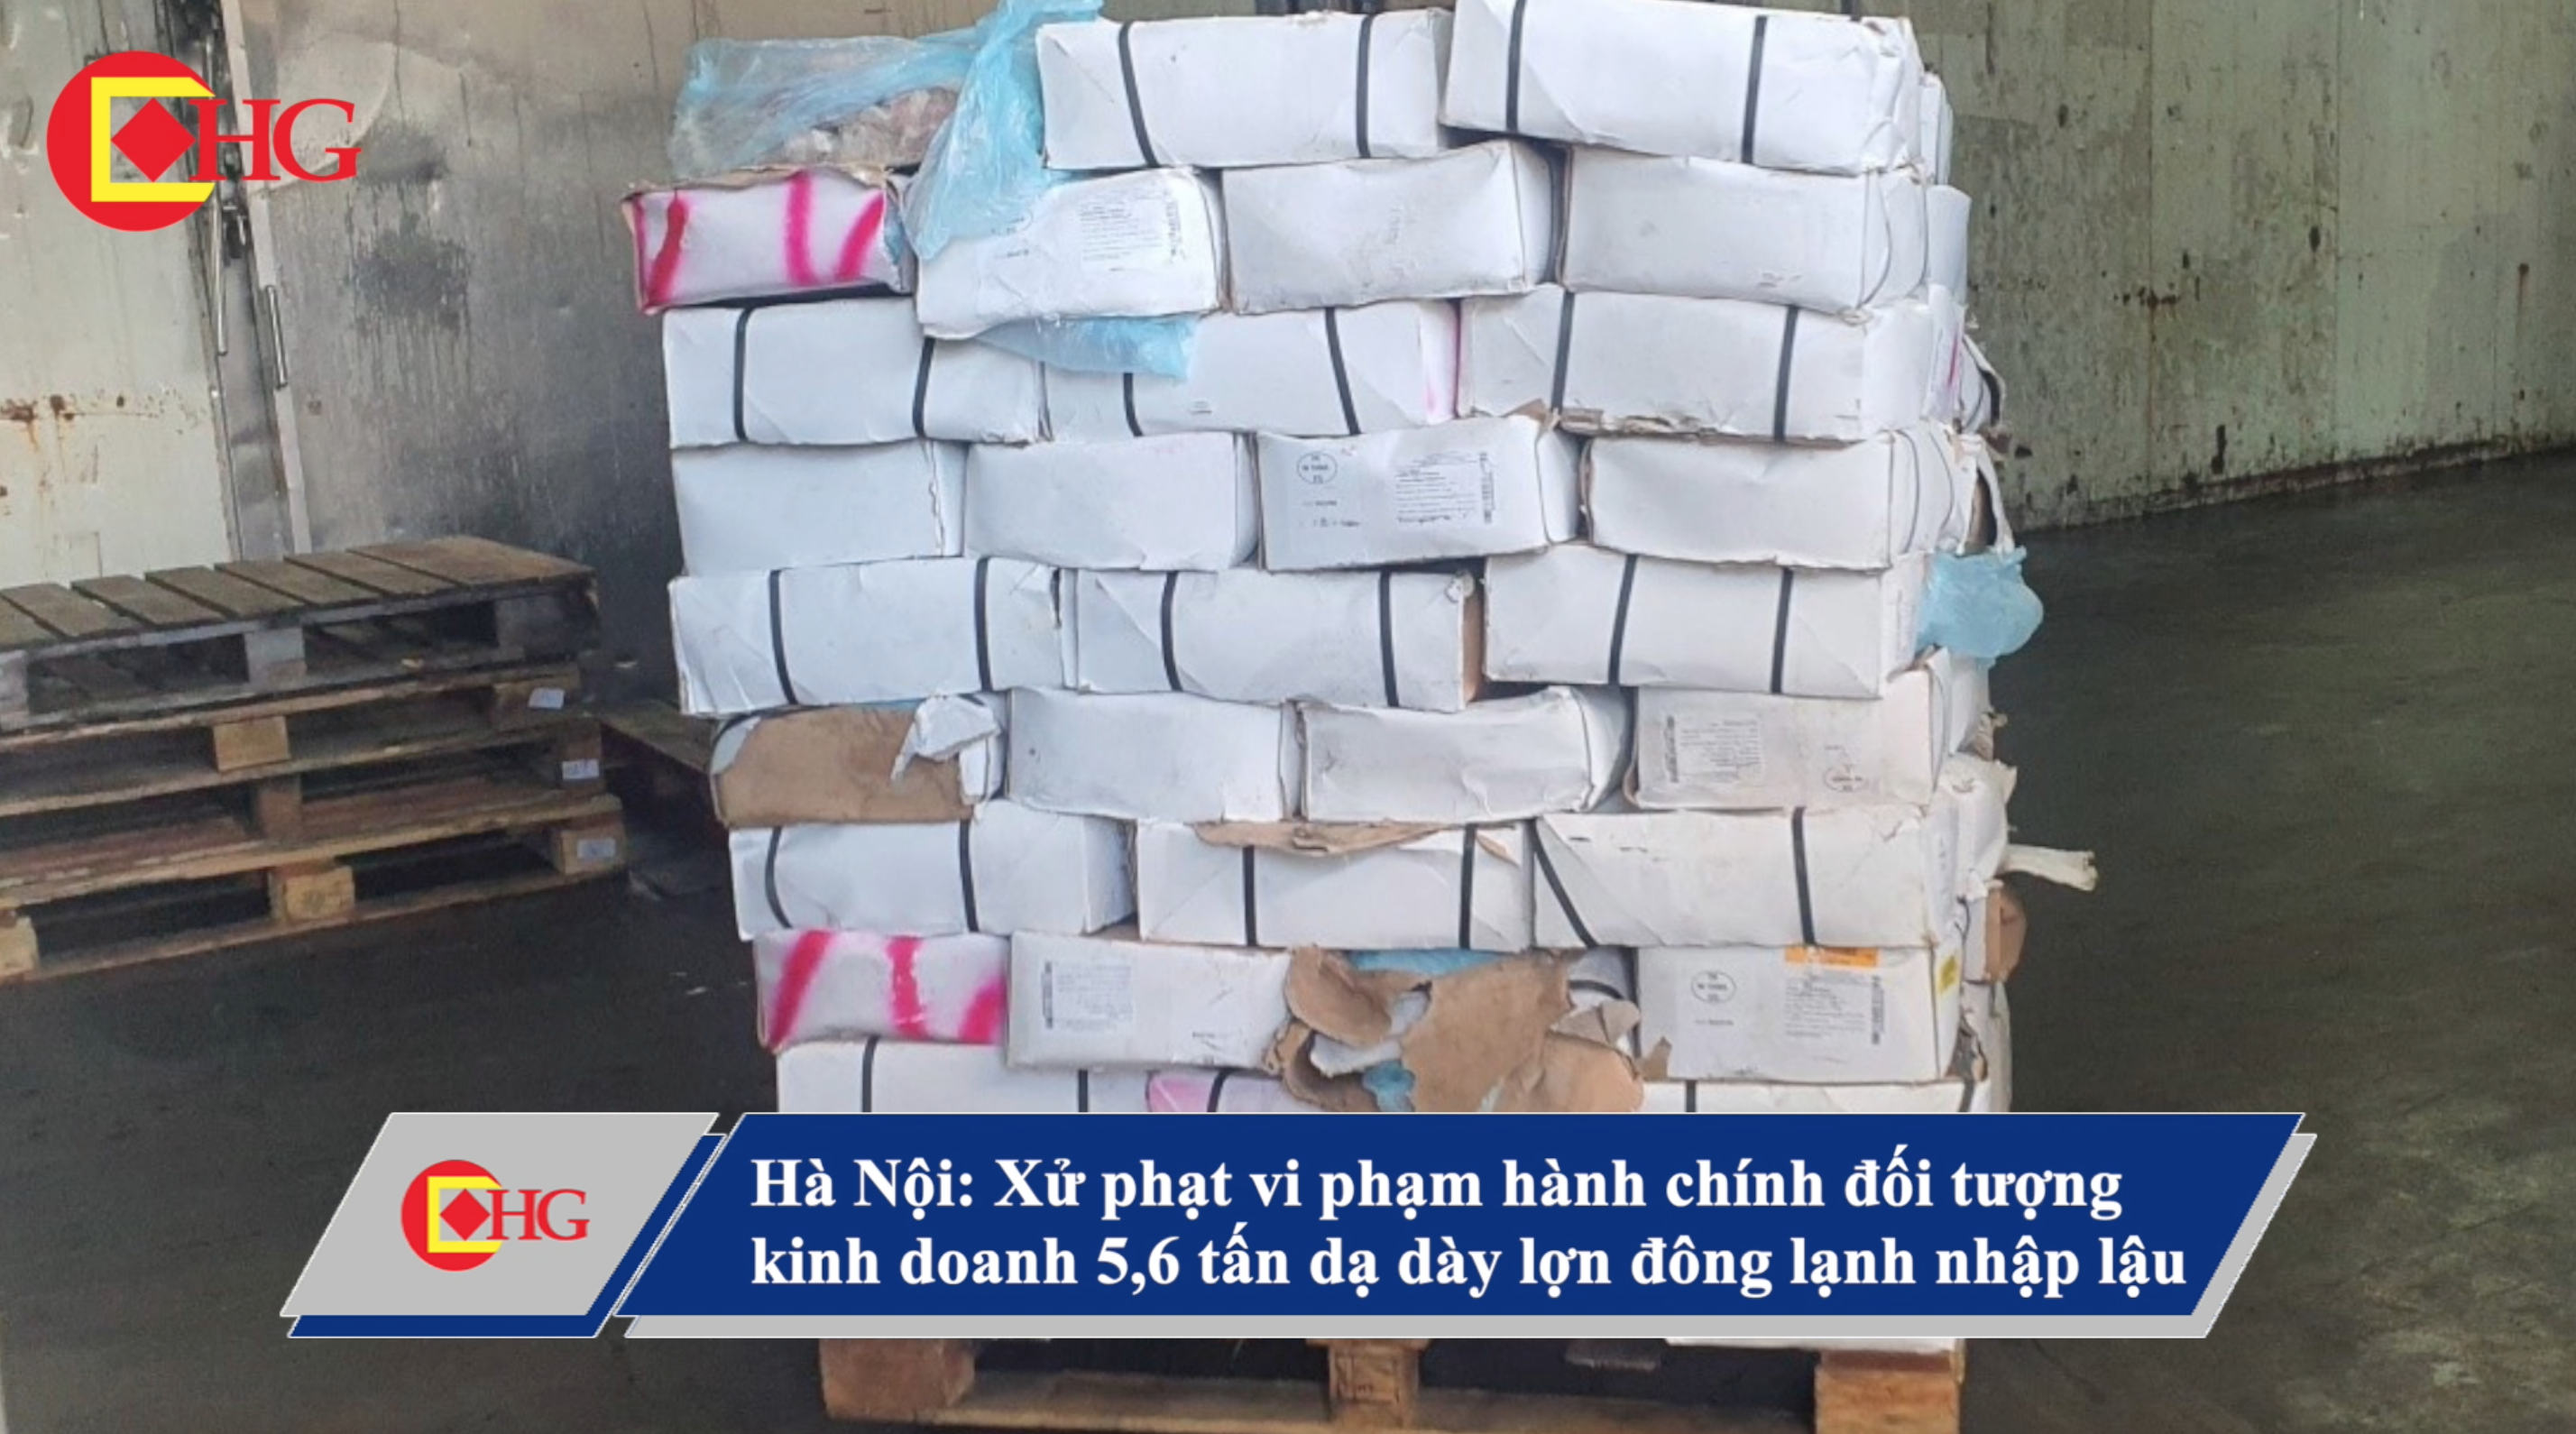 Hà Nội: Xử phạt vi phạm hành chính đối tượng kinh doanh 5,6 tấn dạ dày lợn đông lạnh nhập lậu